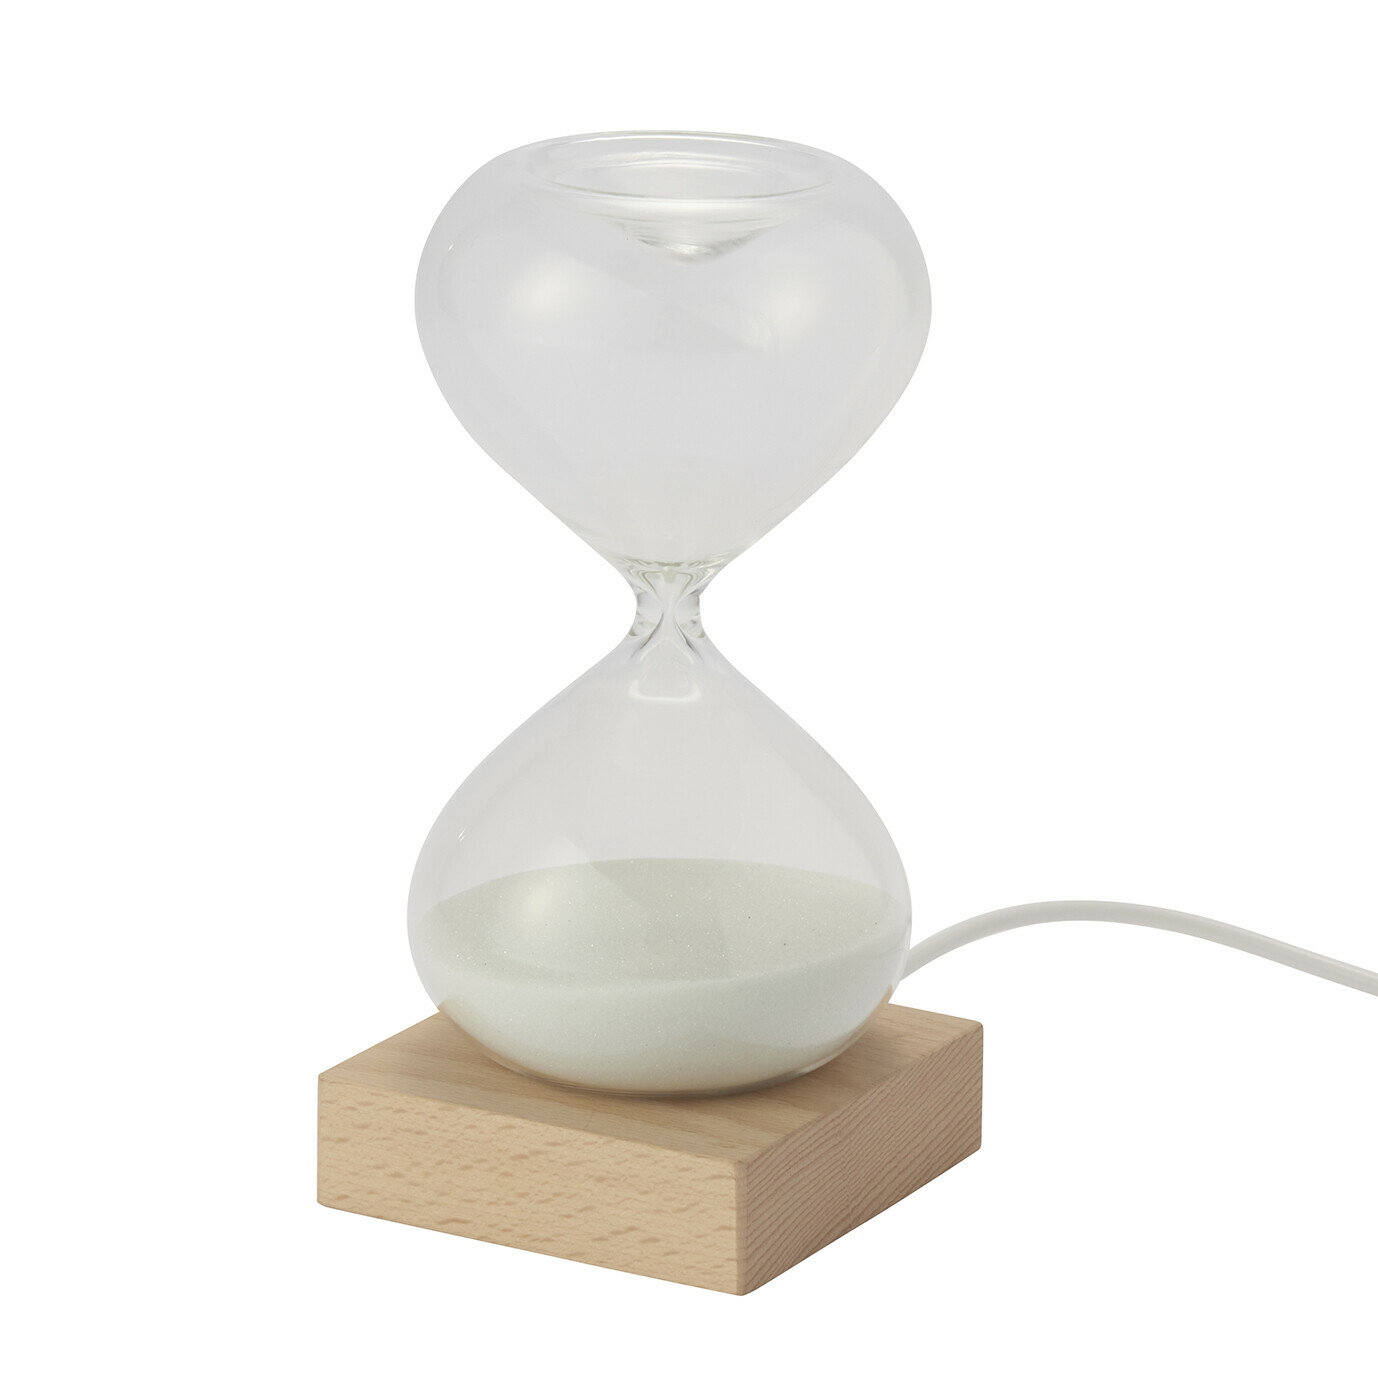 砂時計 砂時計 LEDライト付き 15分計 ホワイト 白 インテリア雑貨